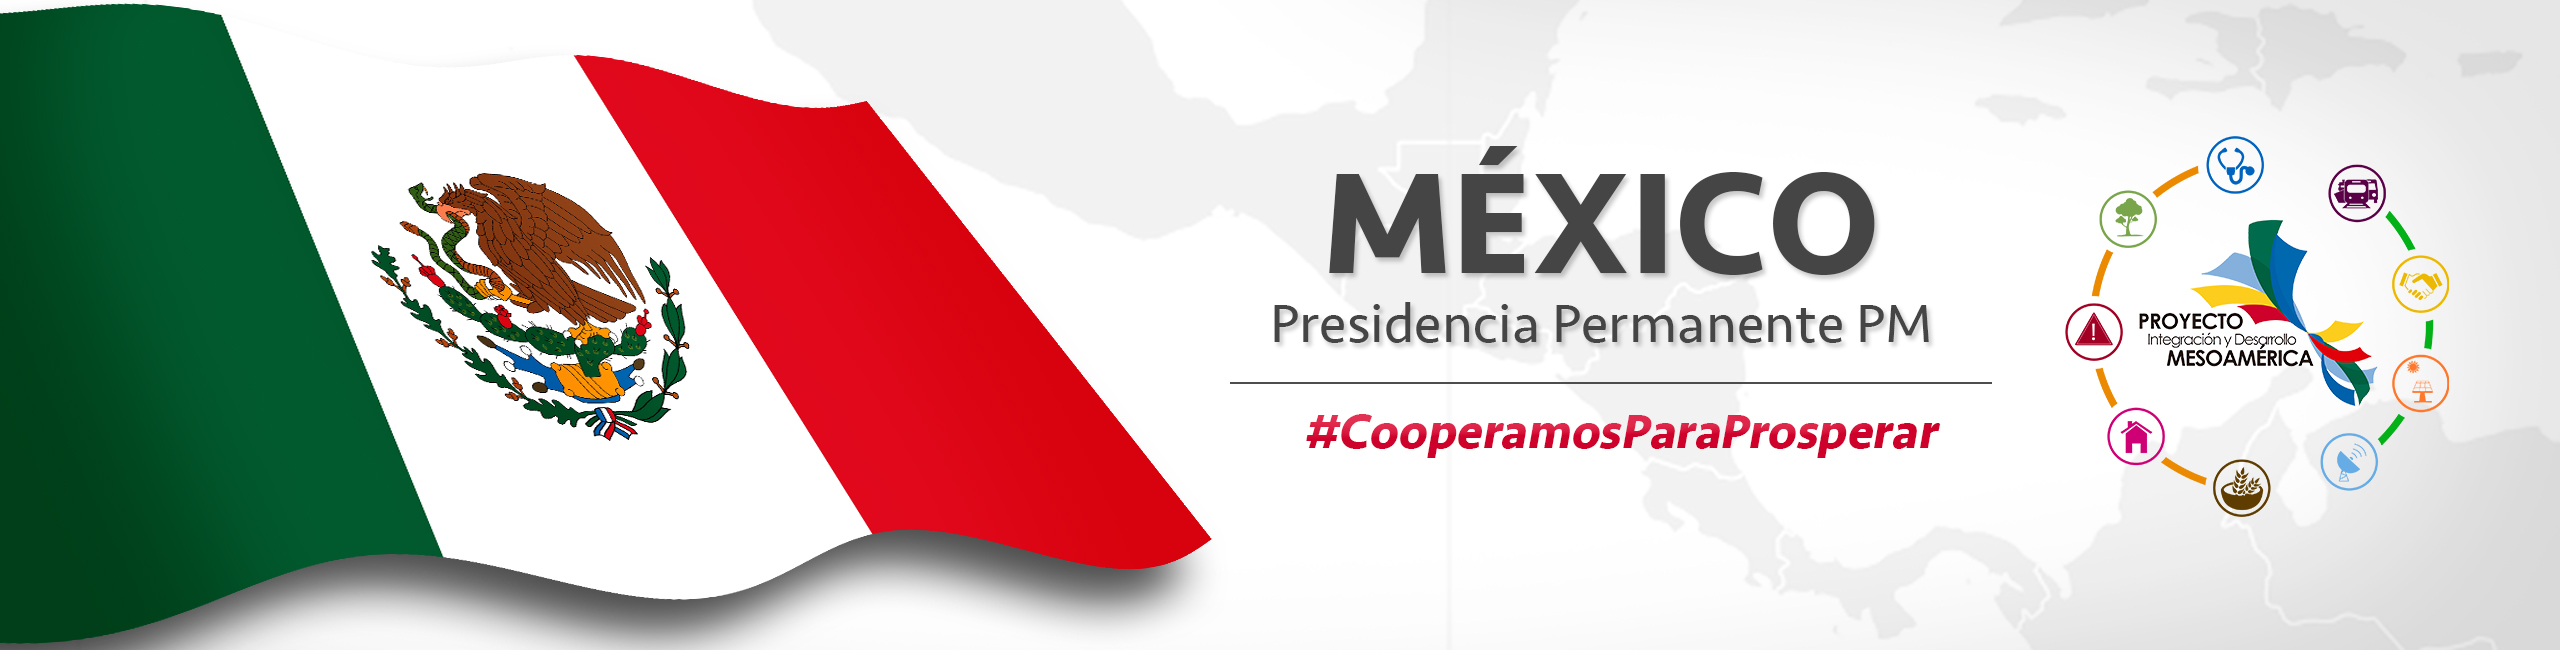 Banner-Mxico-Presidencia-Permanente